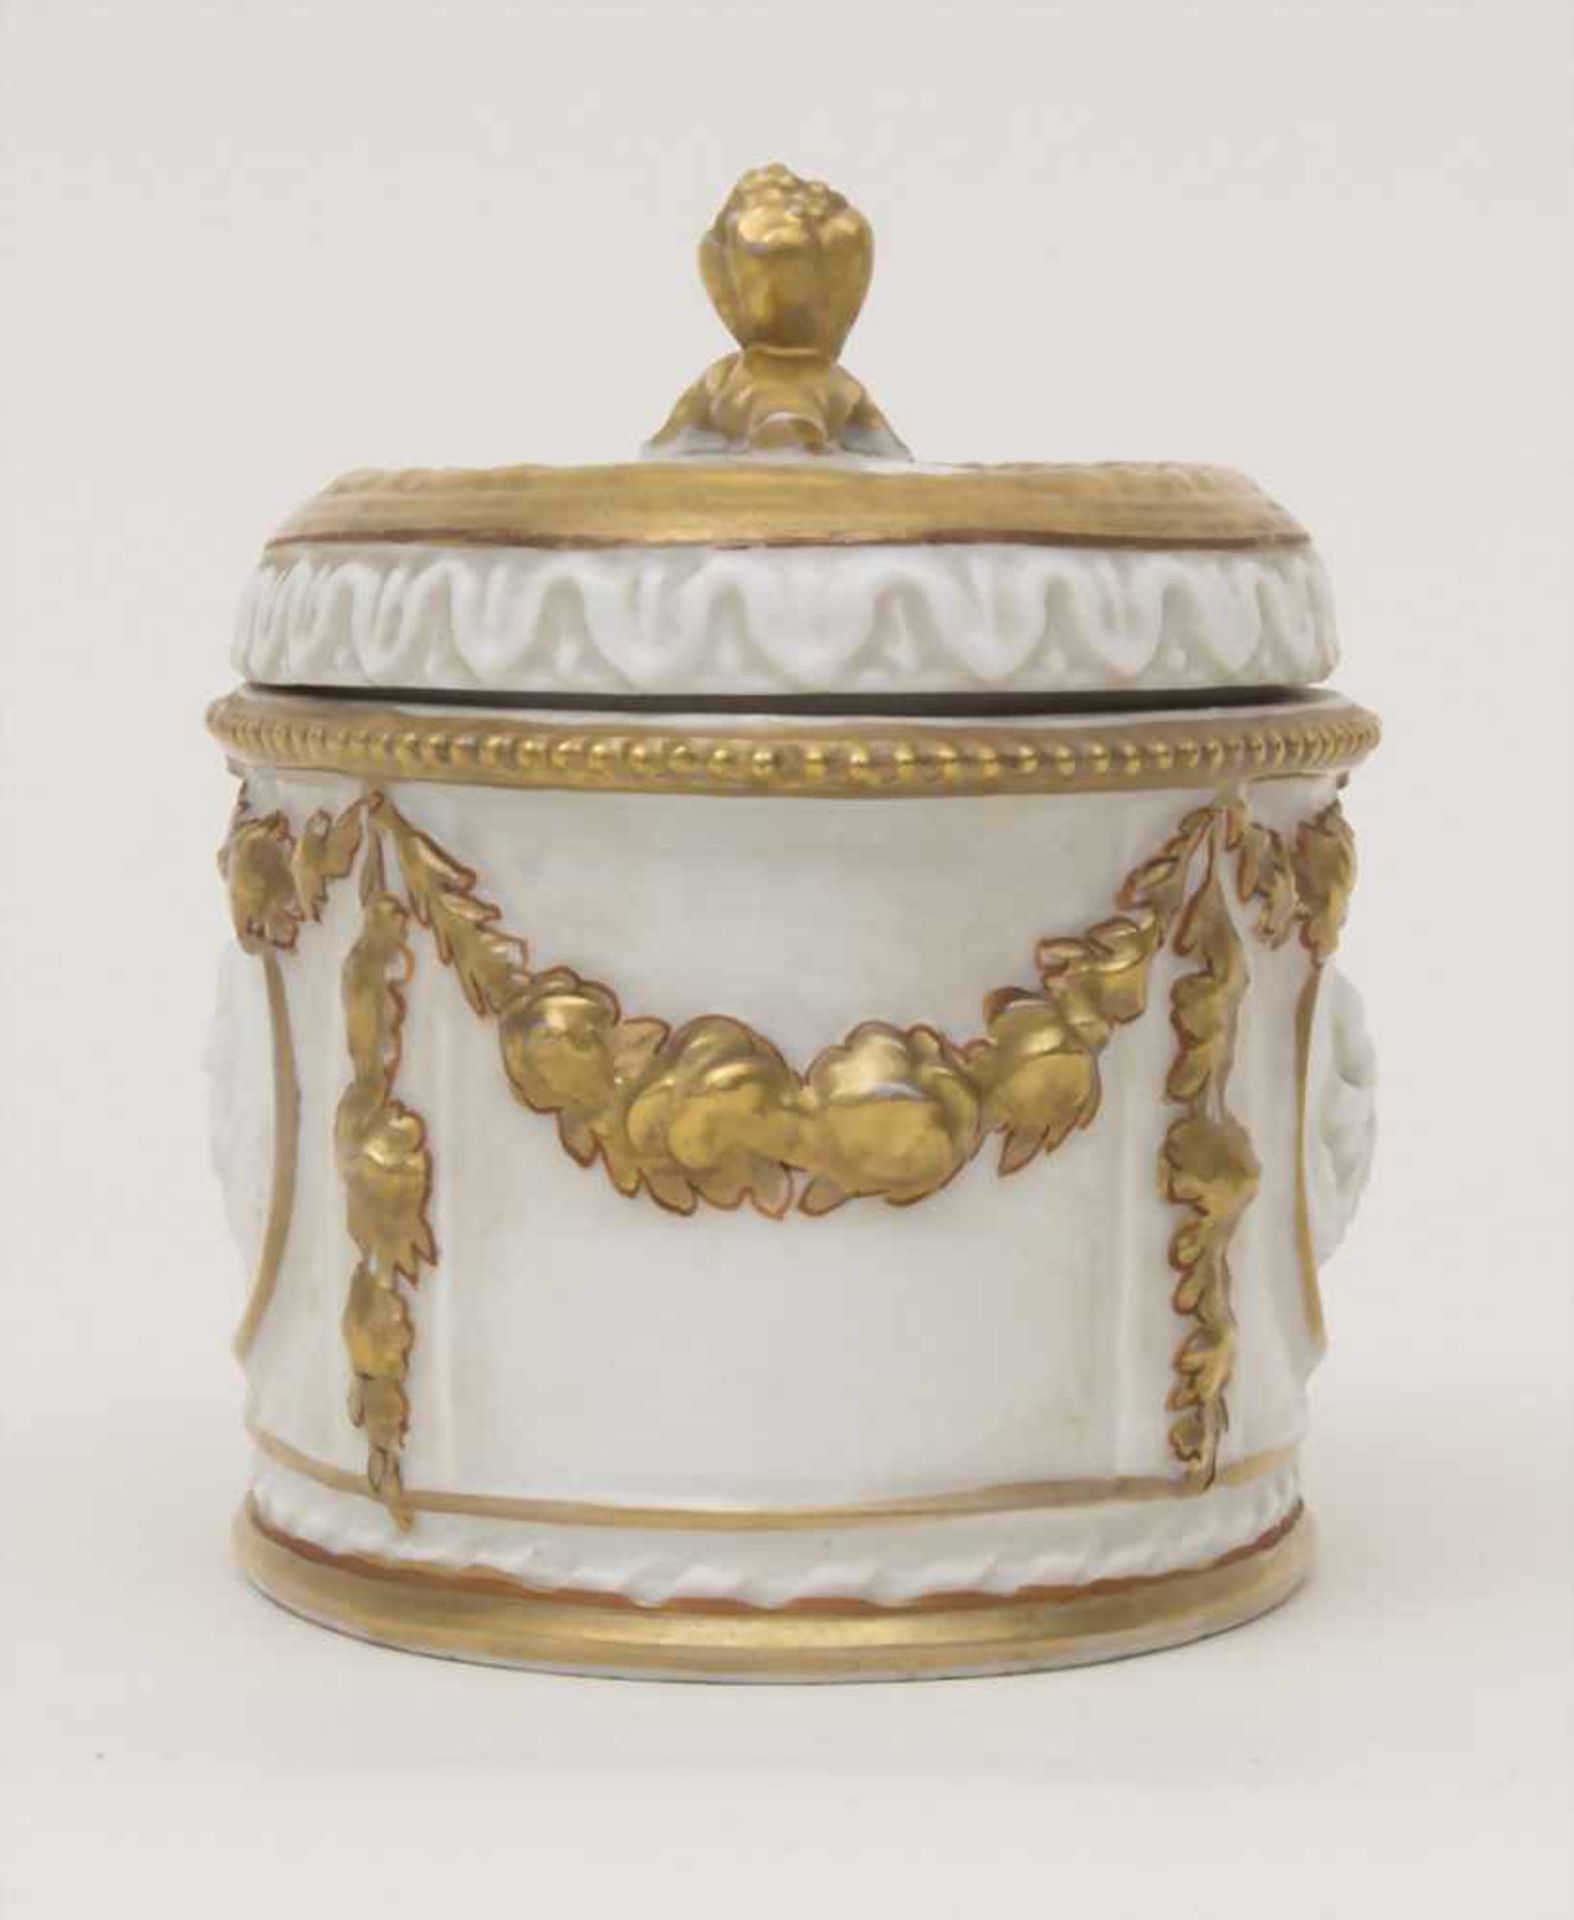 Deckeldose / A lidded box, Älteste Volkstedt, um 1900Material: Porzellan, goldstaffiert, glasiert, - Bild 4 aus 7